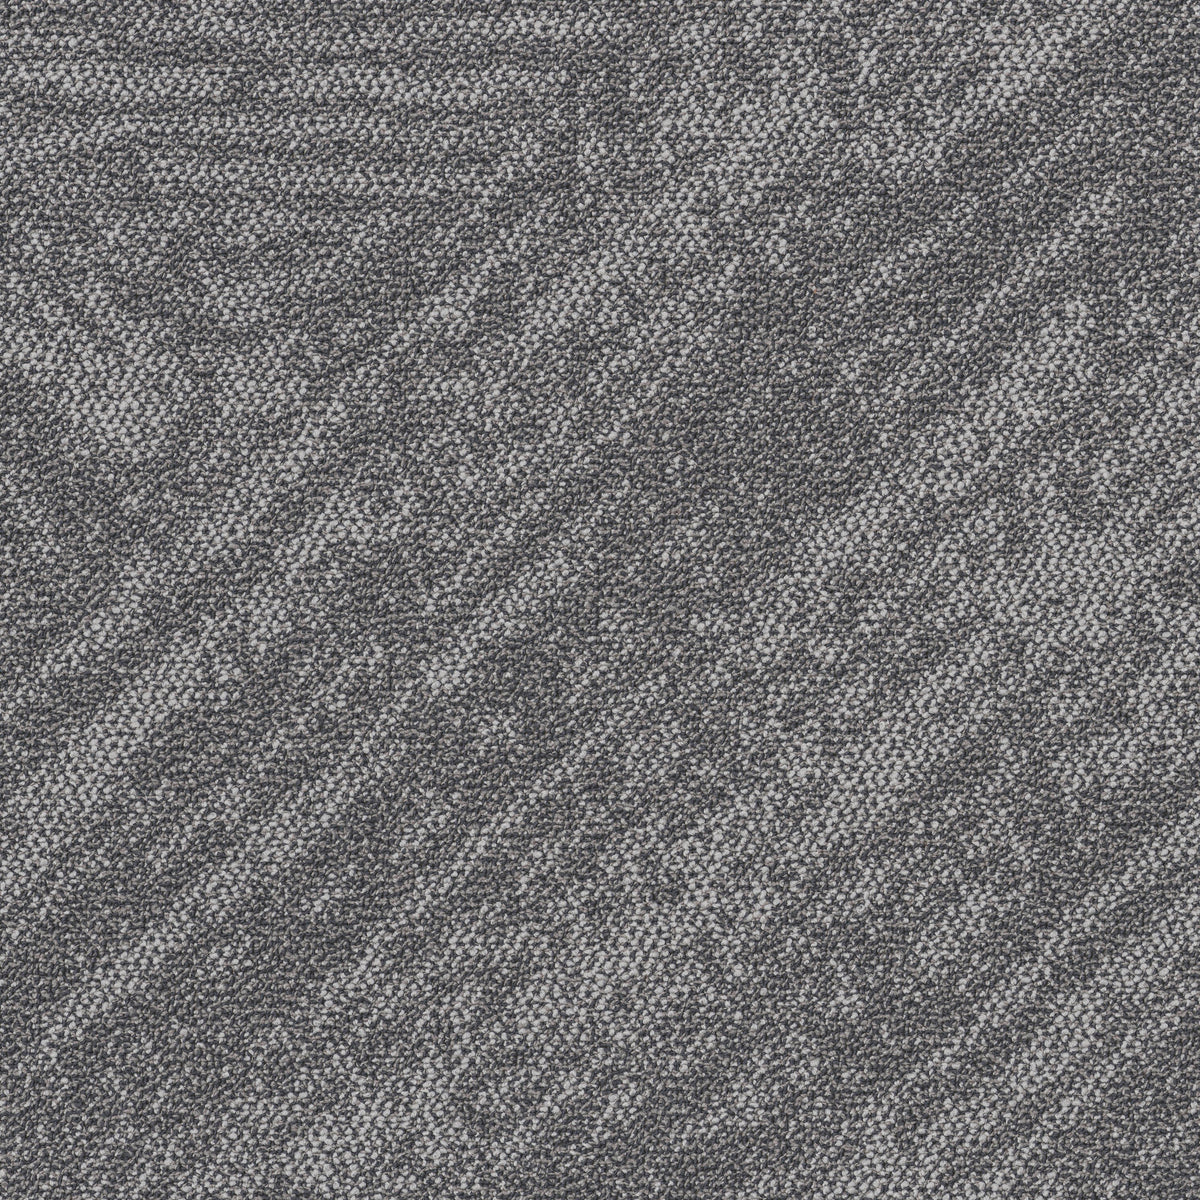 Shaw Contract - Floor Architecture - Bisect Tile - Carpet Tile - Silt